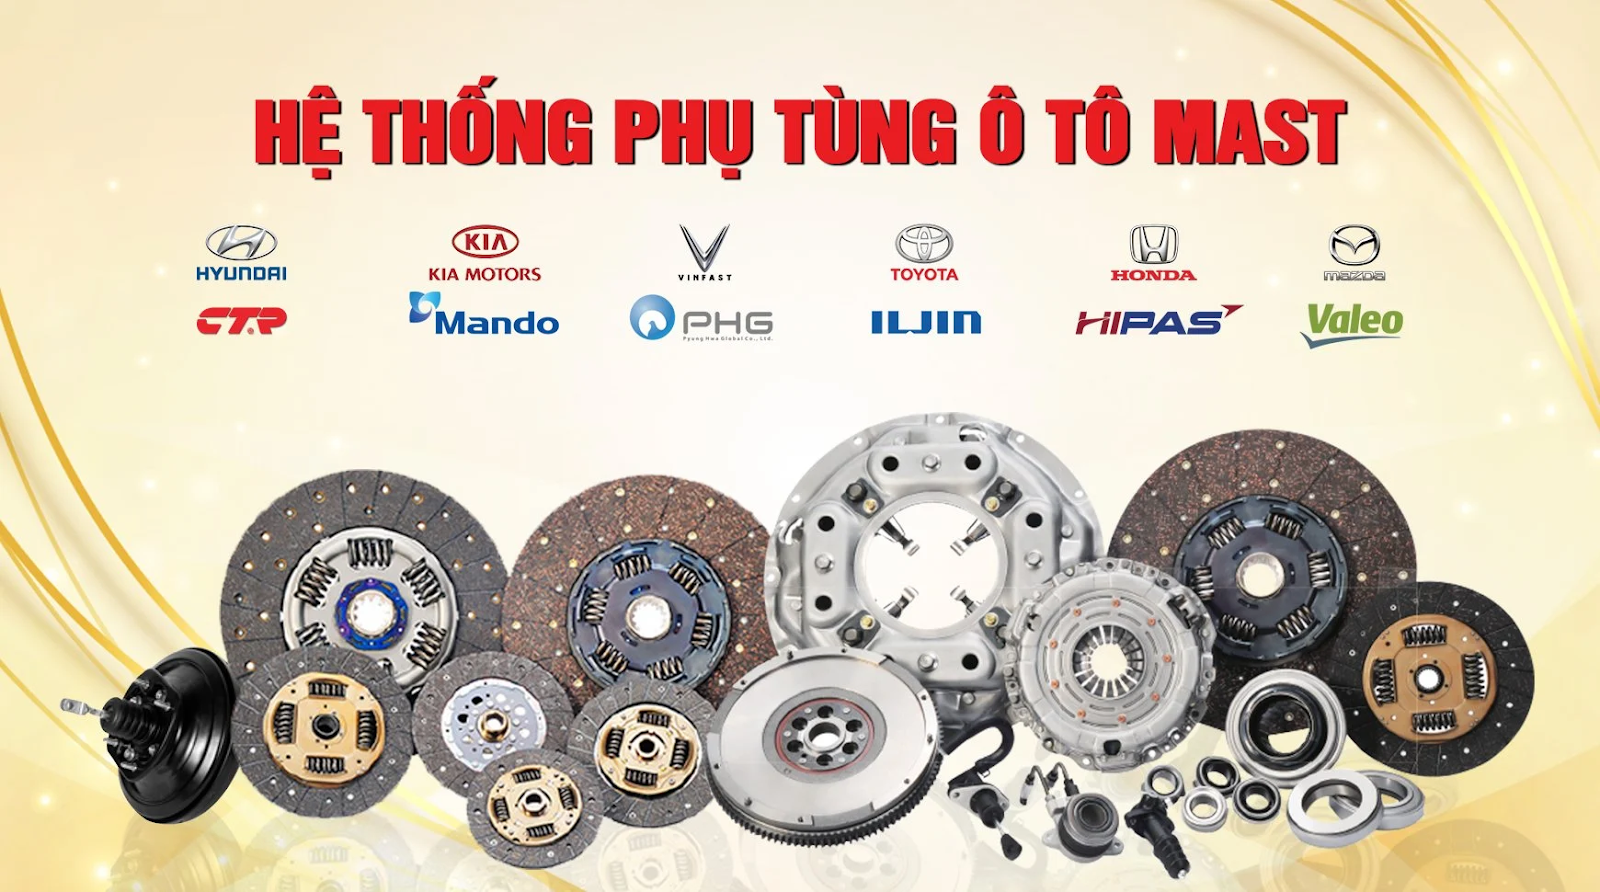 MAST - Hệ thống phụ tùng ô tô chính hãng hàng đầu tại Việt Nam
